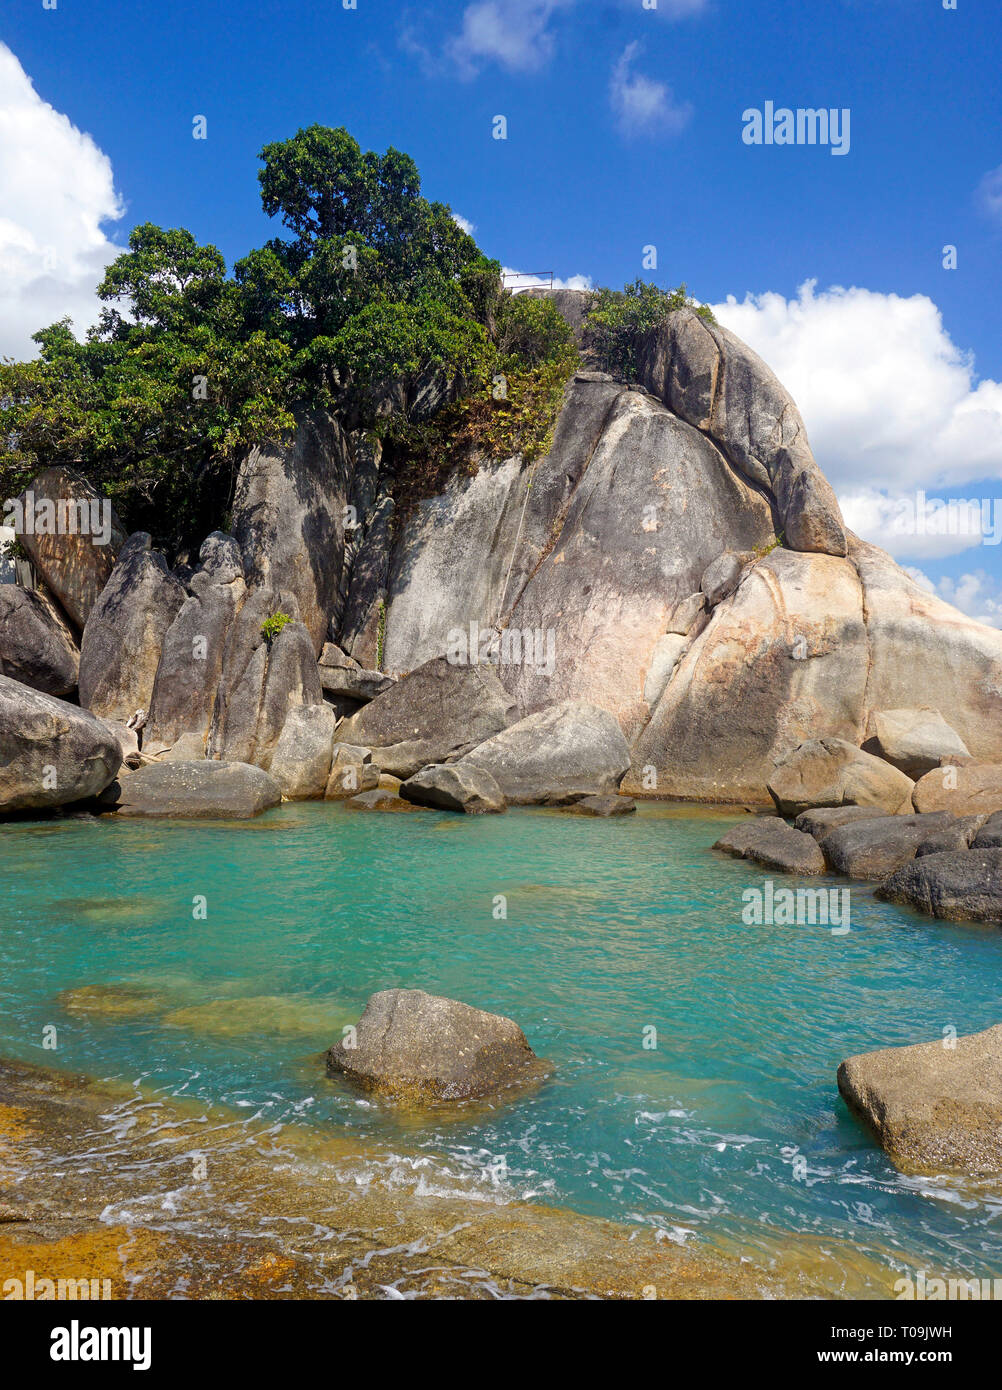 Formaciones rocosas de Hin Ta y Hin Yai Rocks, el punto de vista popular en Lamai Beach, Koh Samui, en el Golfo de Tailandia, Tailandia Foto de stock